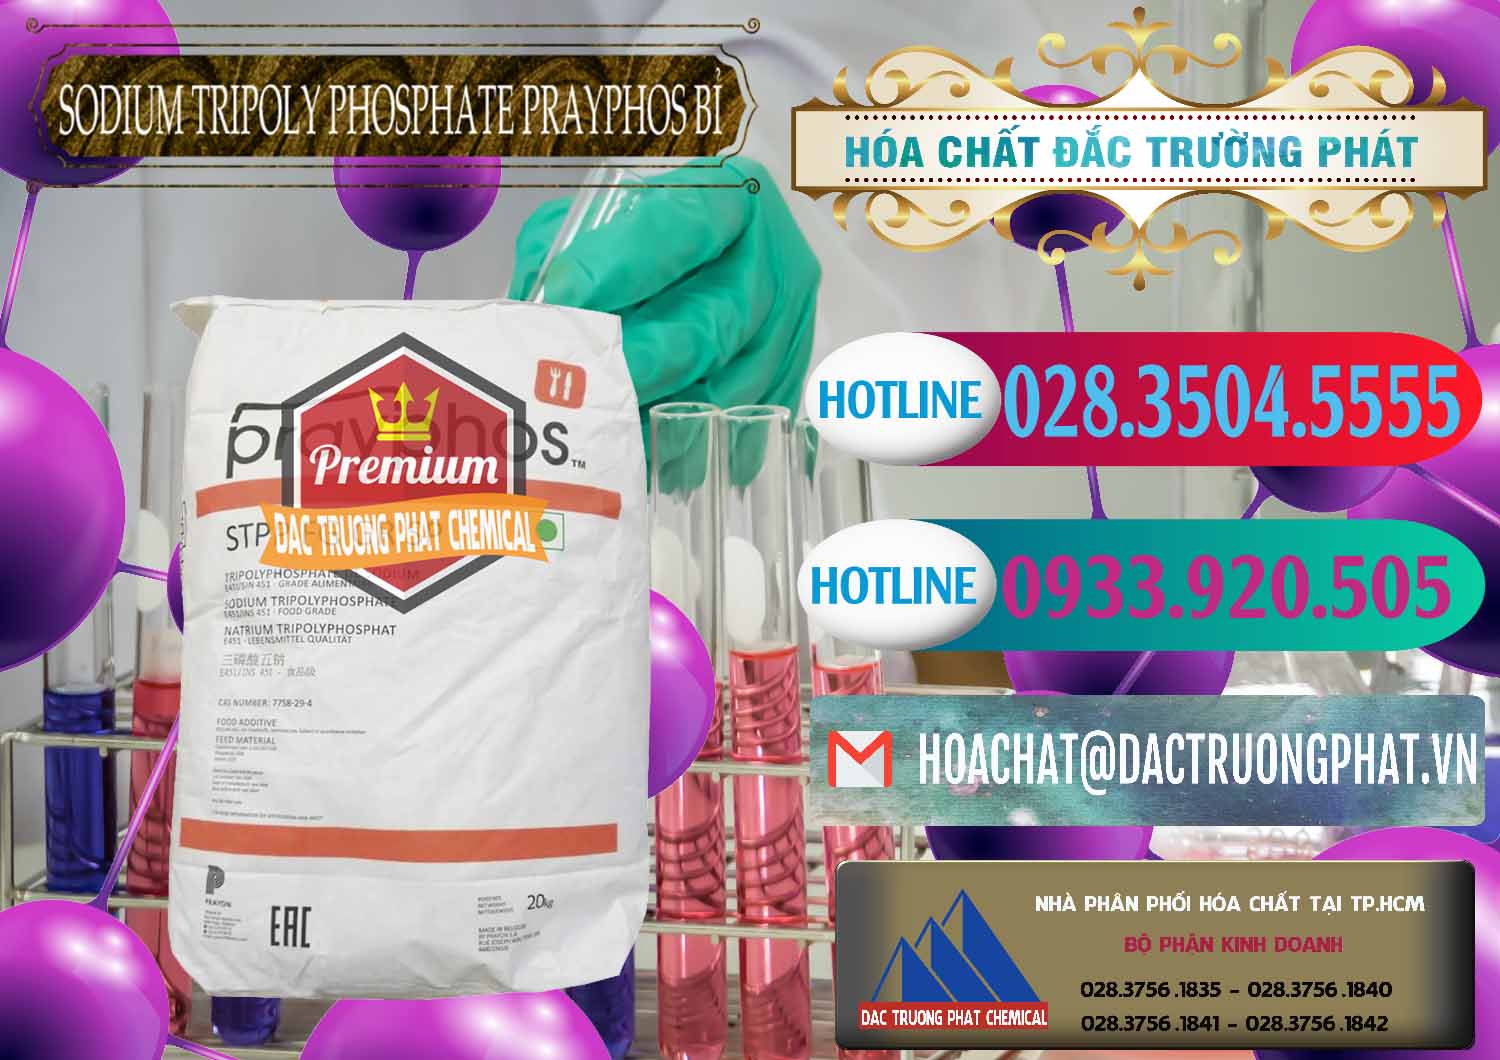 Cty bán - cung cấp Sodium Tripoly Phosphate - STPP Prayphos Bỉ Belgium - 0444 - Nơi chuyên bán & cung cấp hóa chất tại TP.HCM - truongphat.vn